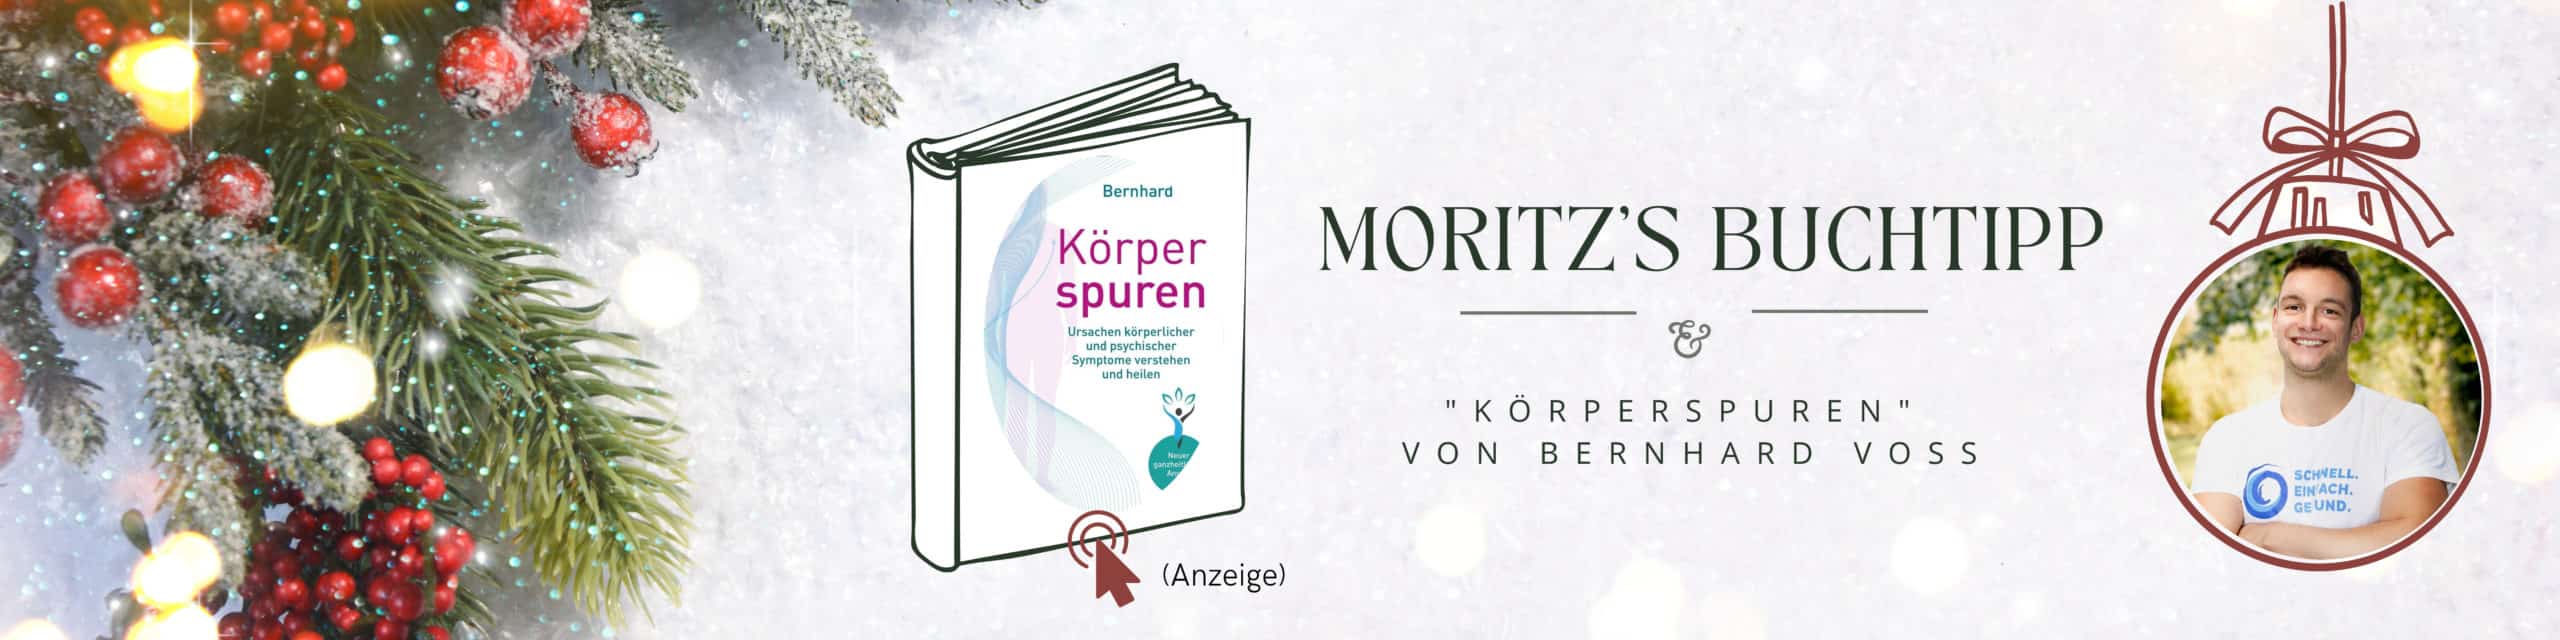 Moritz_Buchtipp